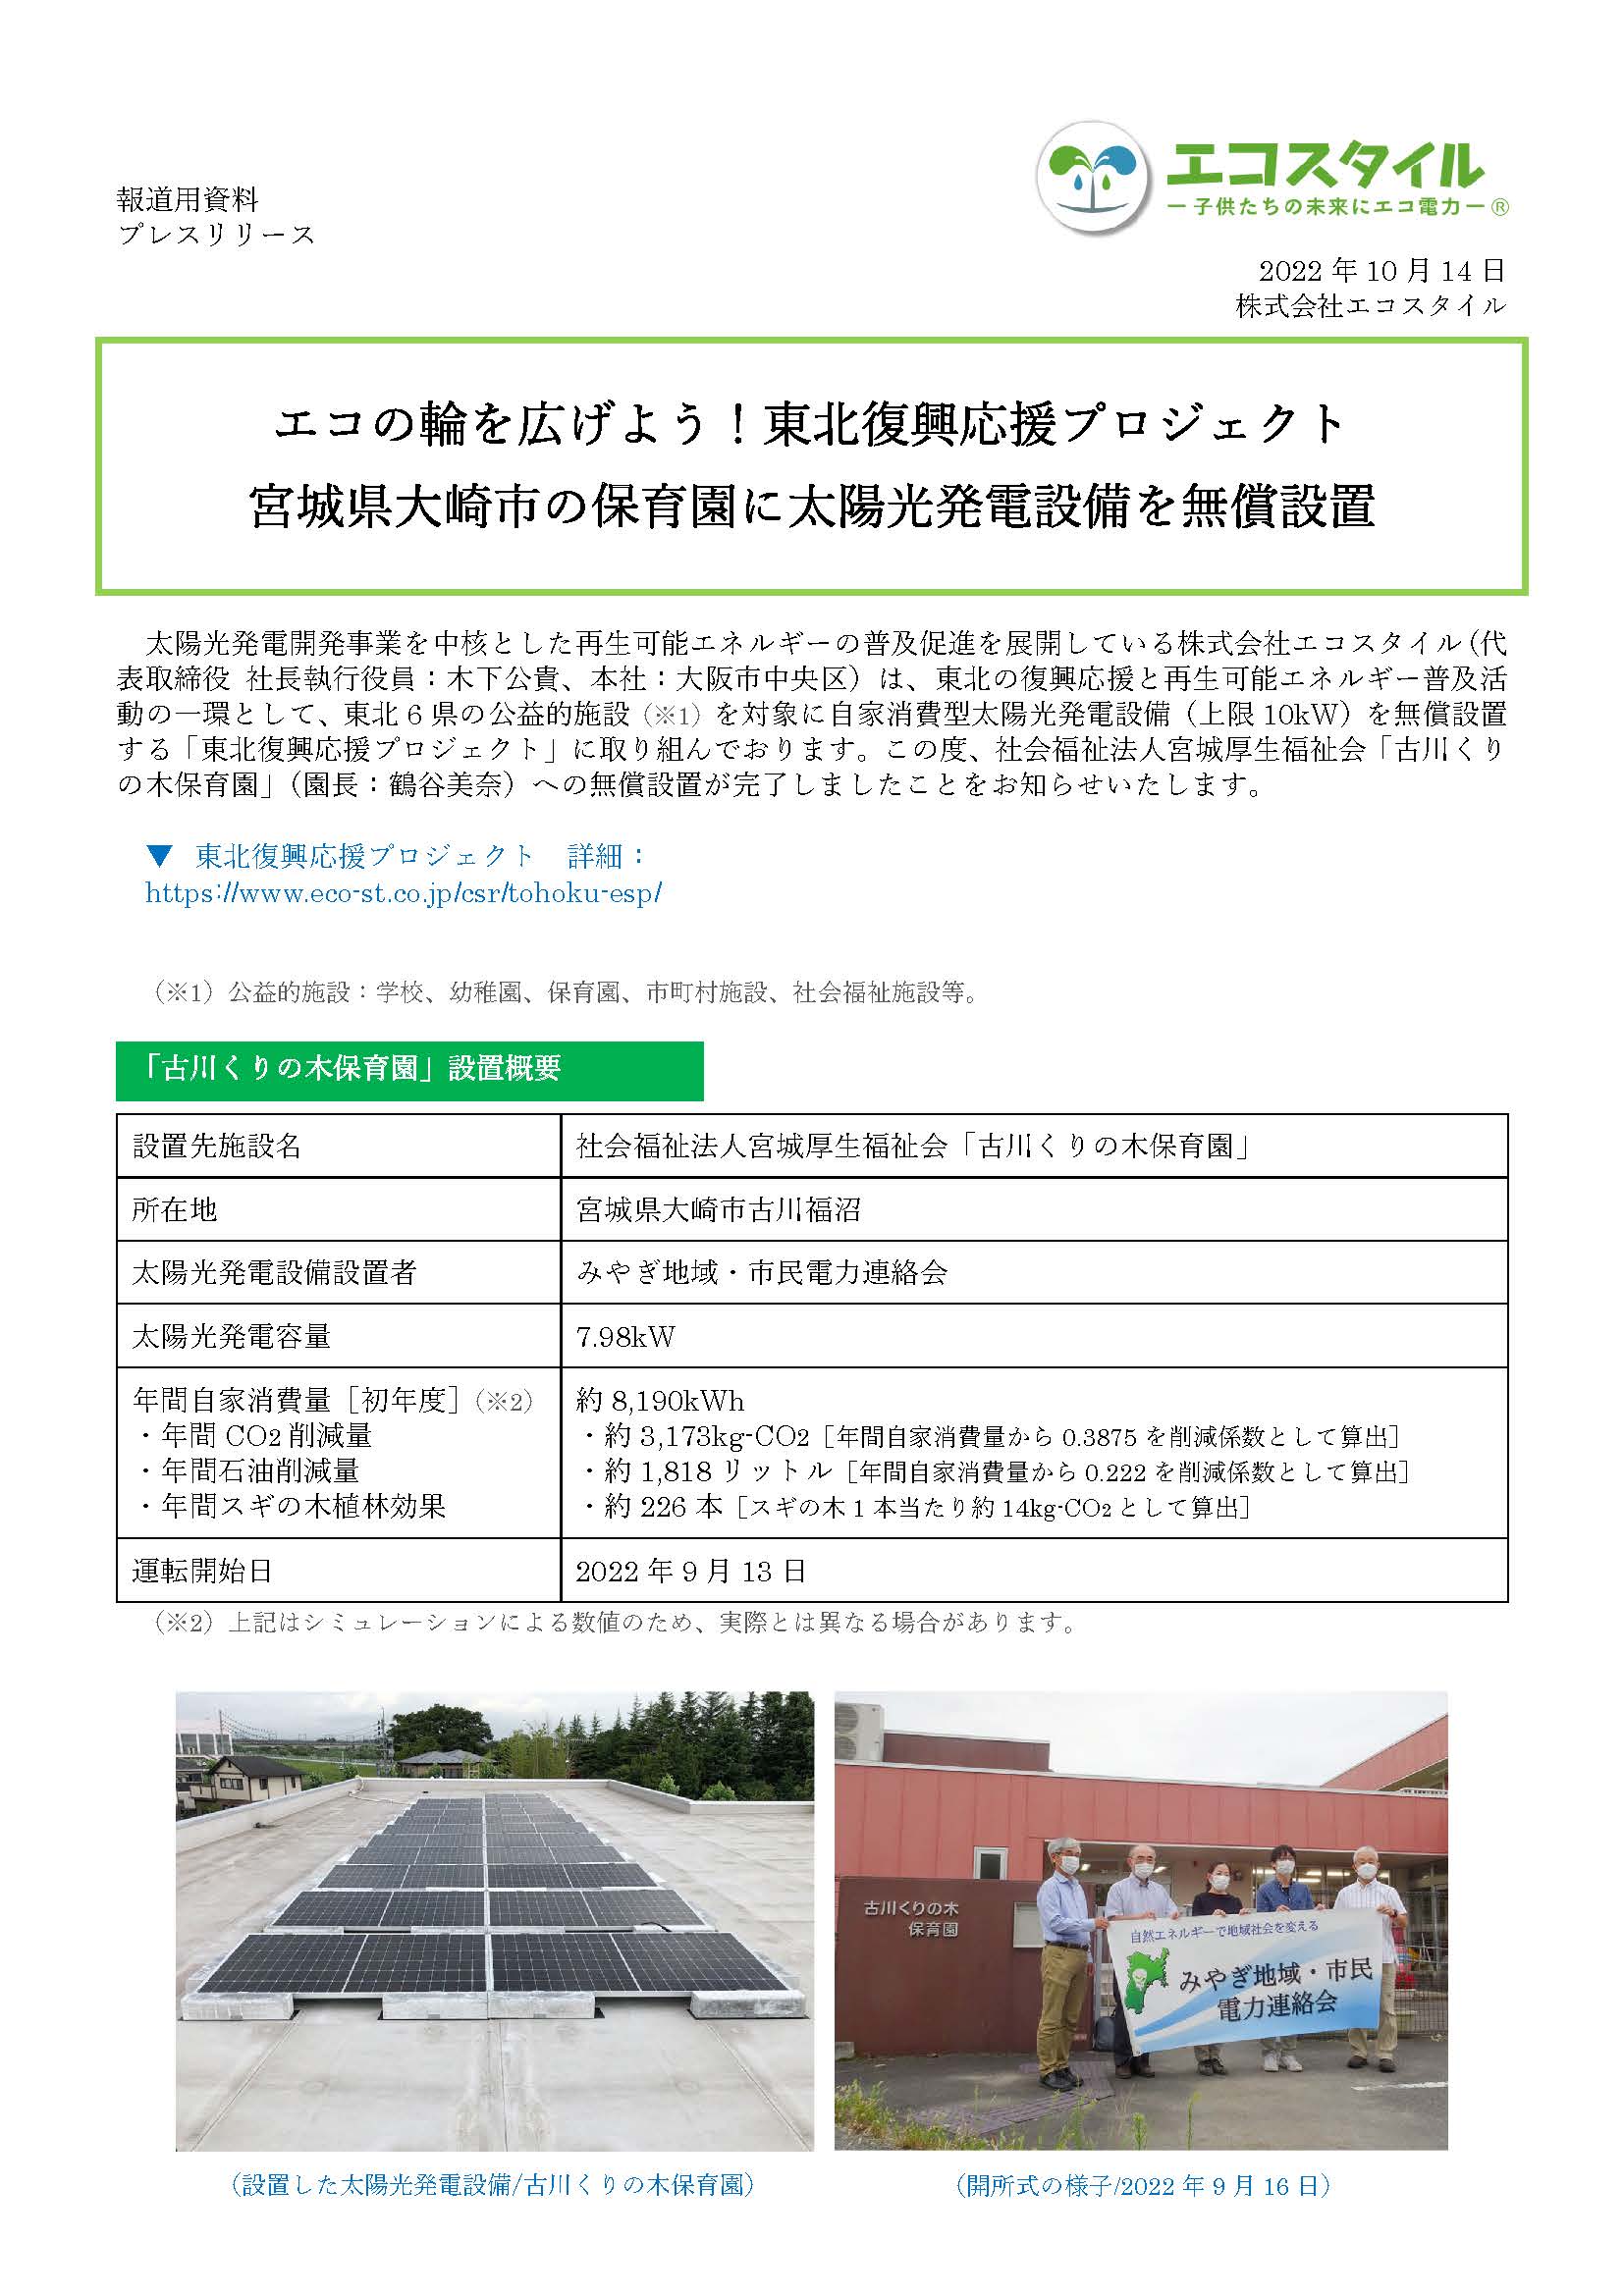 エコの輪を広げよう！東北復興応援プロジェクト
宮城県大崎市の保育園に太陽光発電設備を無償設置